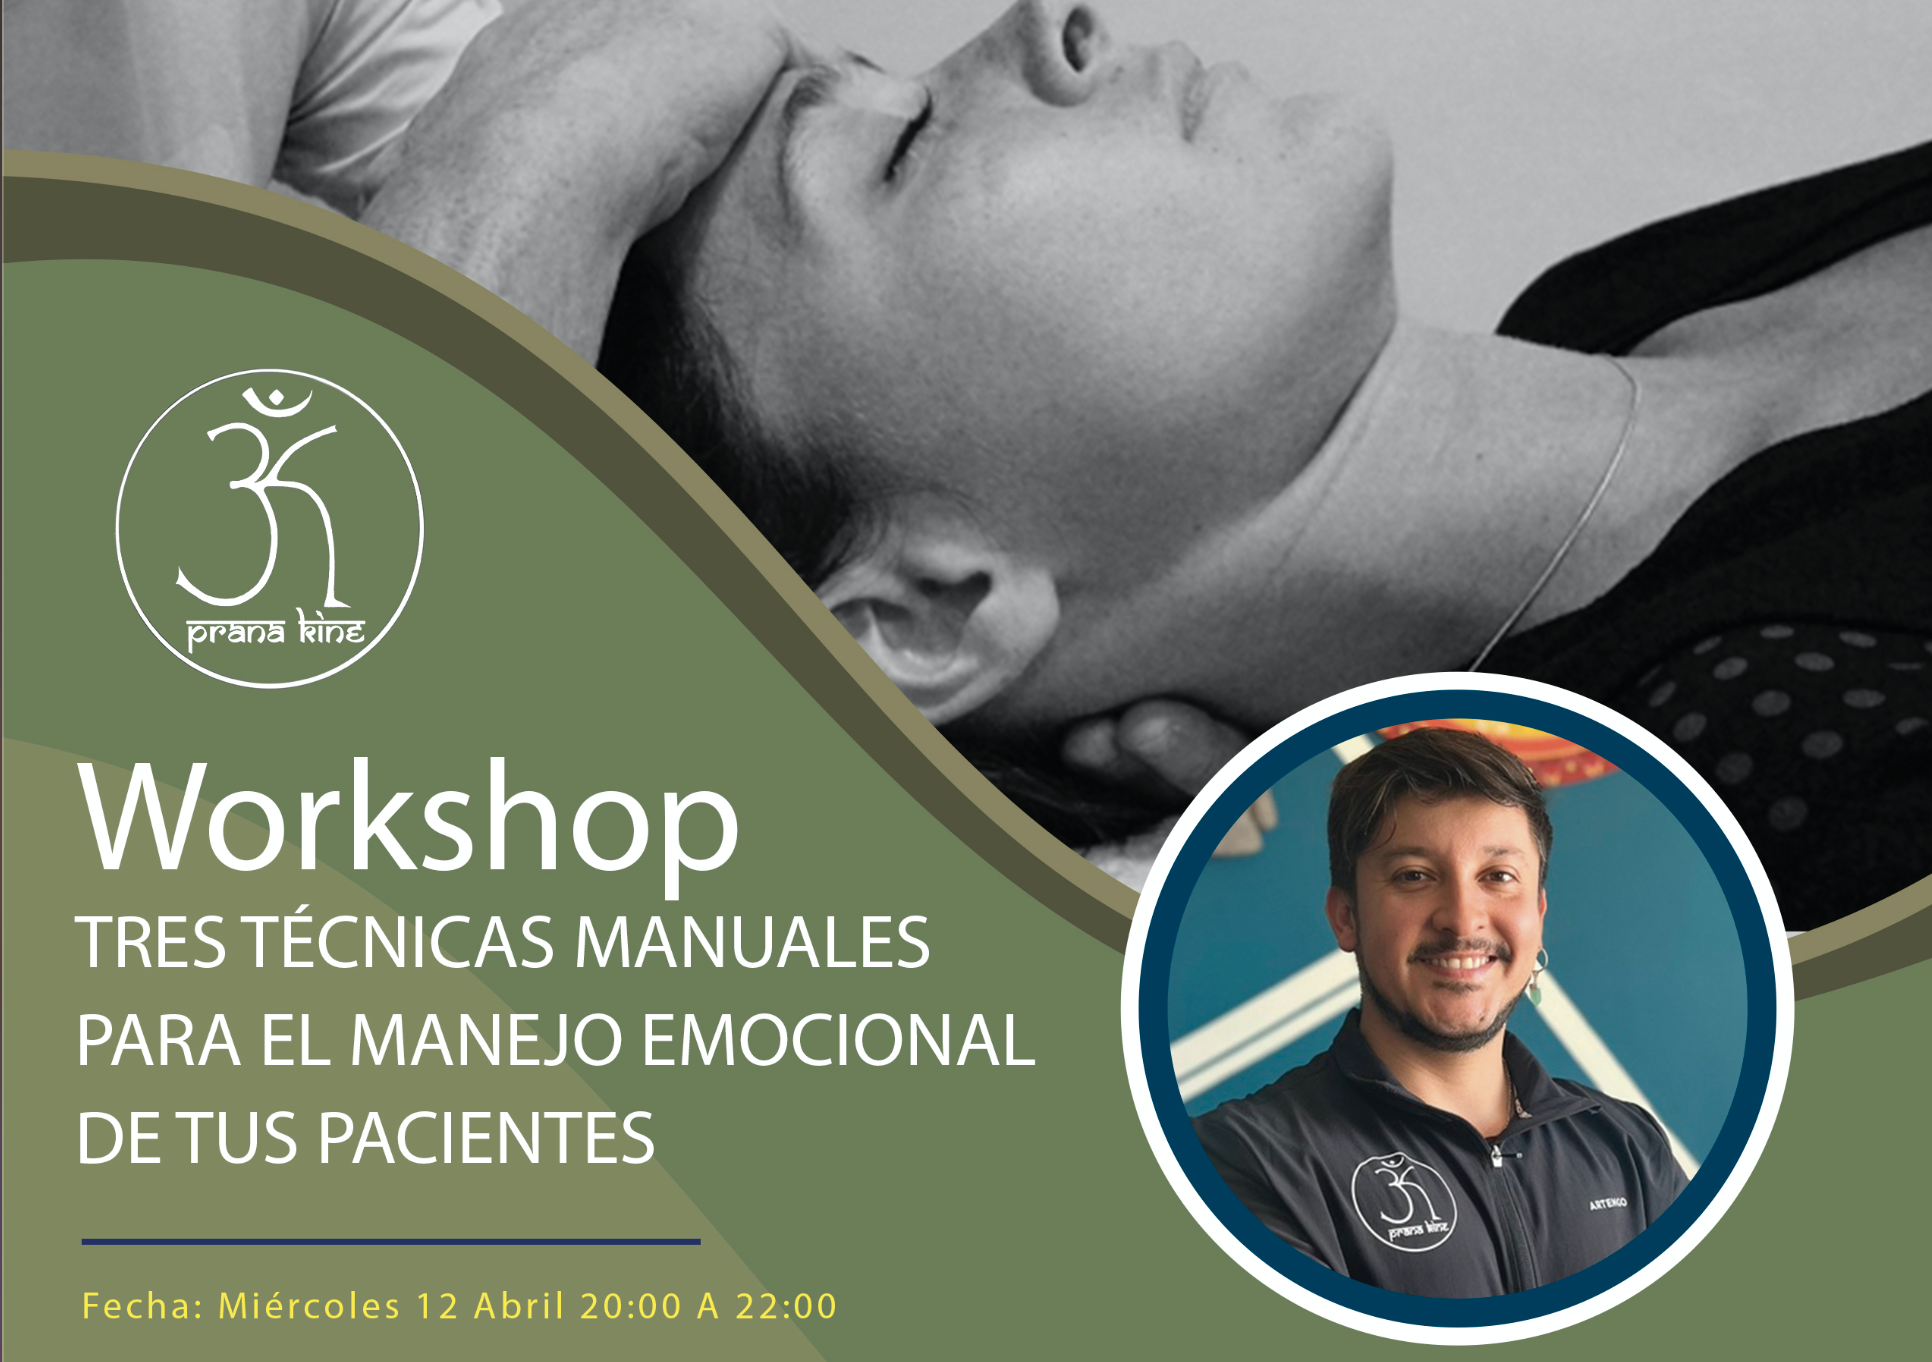 Workshop; Tres técnicas manuales para el manejo emocional de tus pacientes